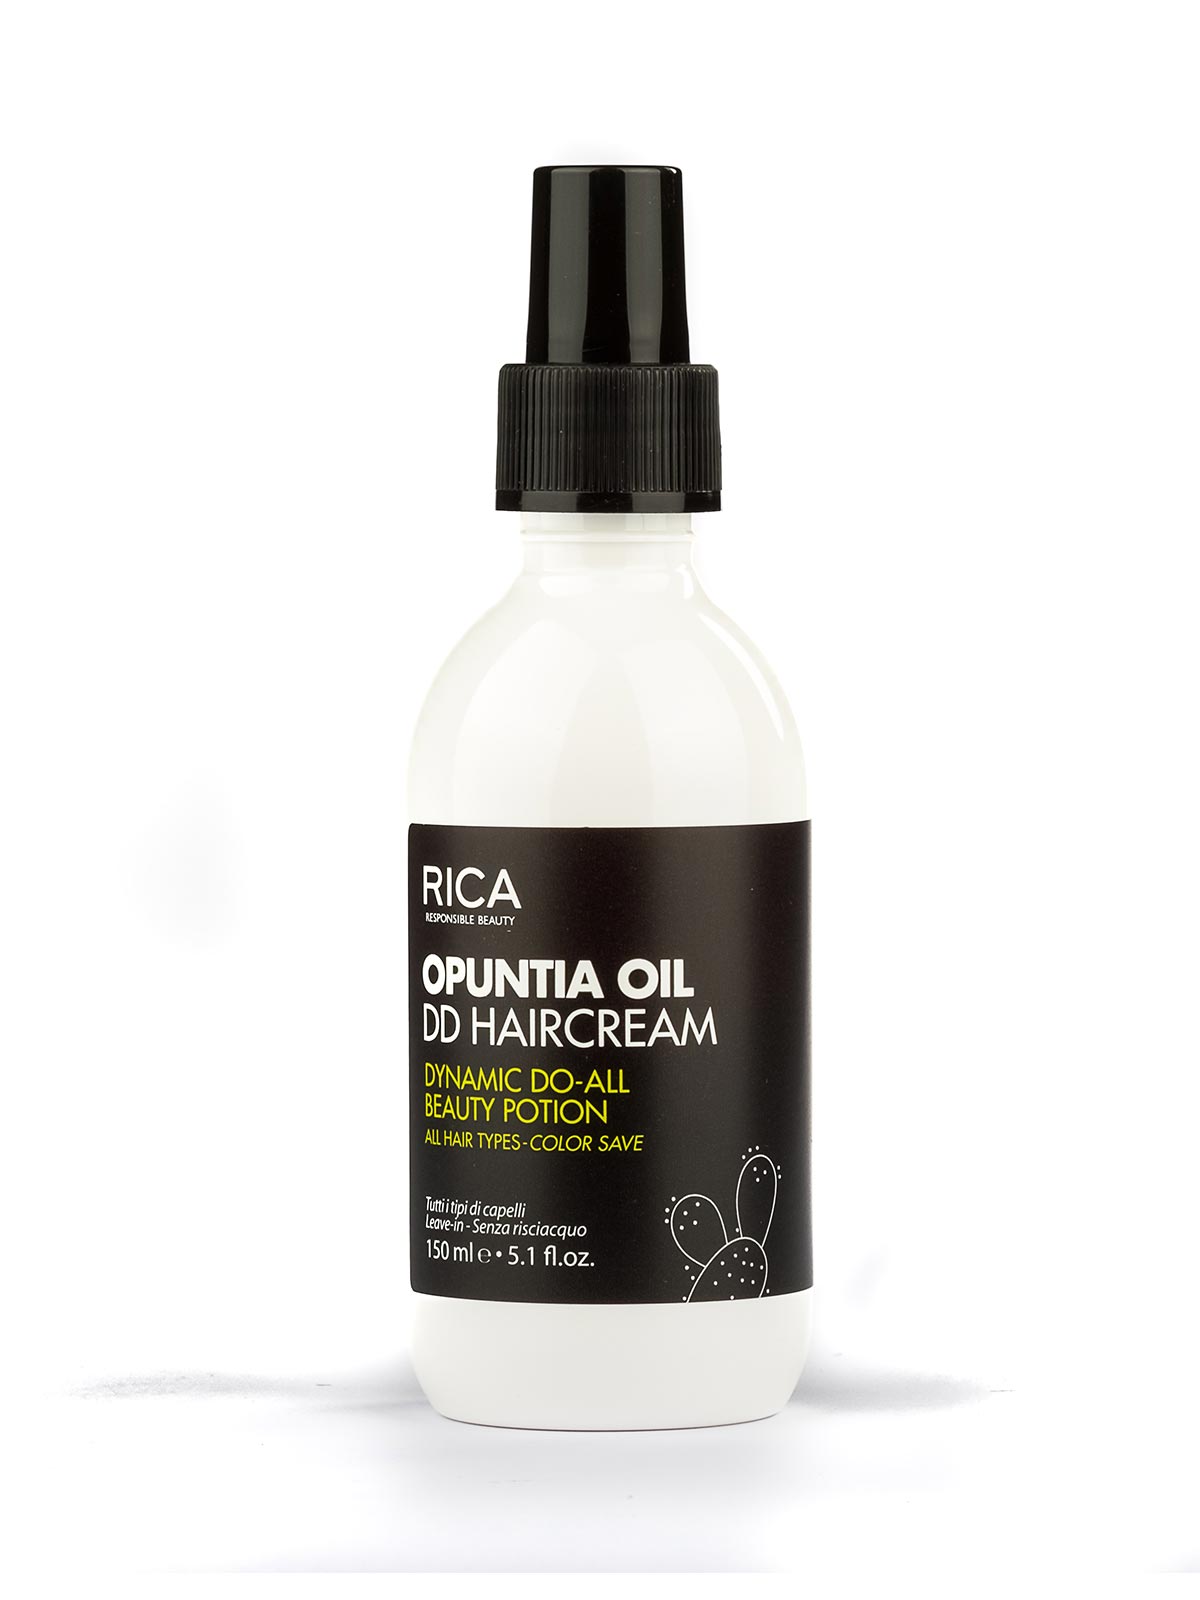 Rica Opuntia Oil DD Haircream